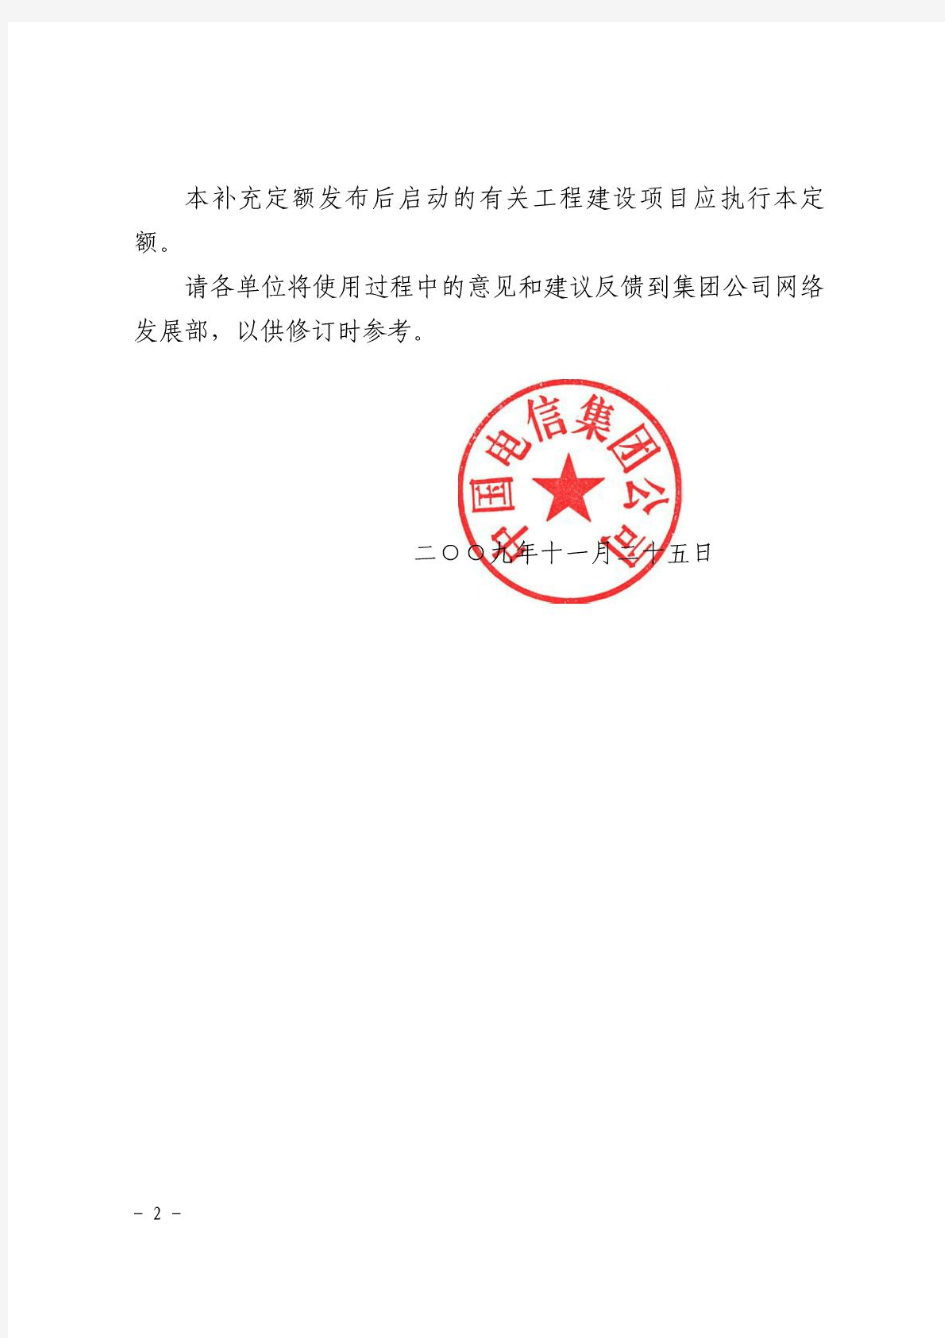 《中国电信集团FTTx等三类工程项目补充施工定额》》(中国电信〔2009〕973号)